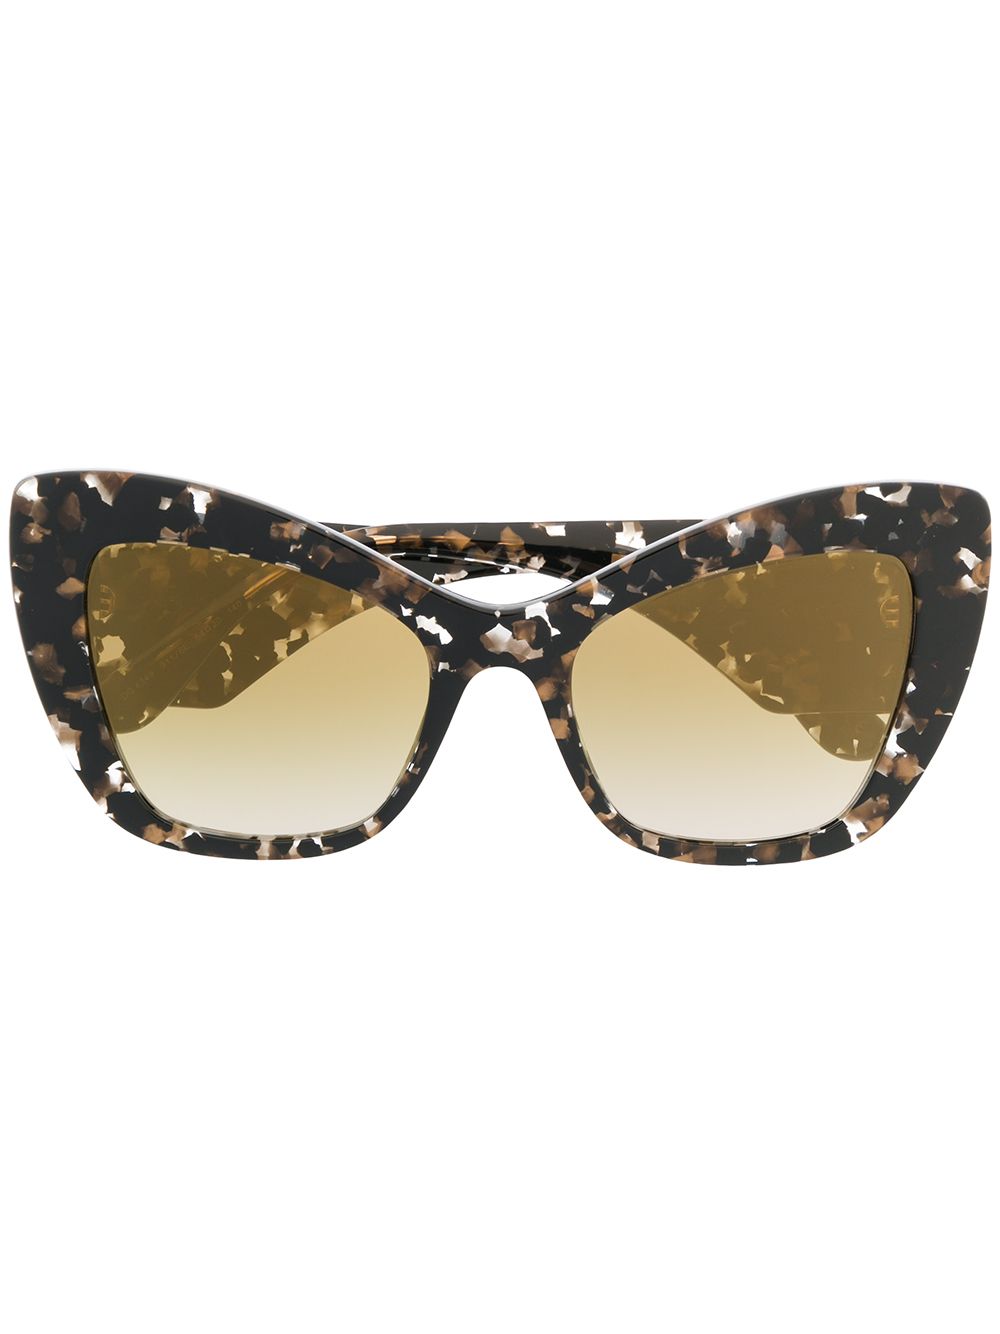 фото Dolce & gabbana eyewear "солнцезащитные очки в массивной оправе ""кошачий глаз"""